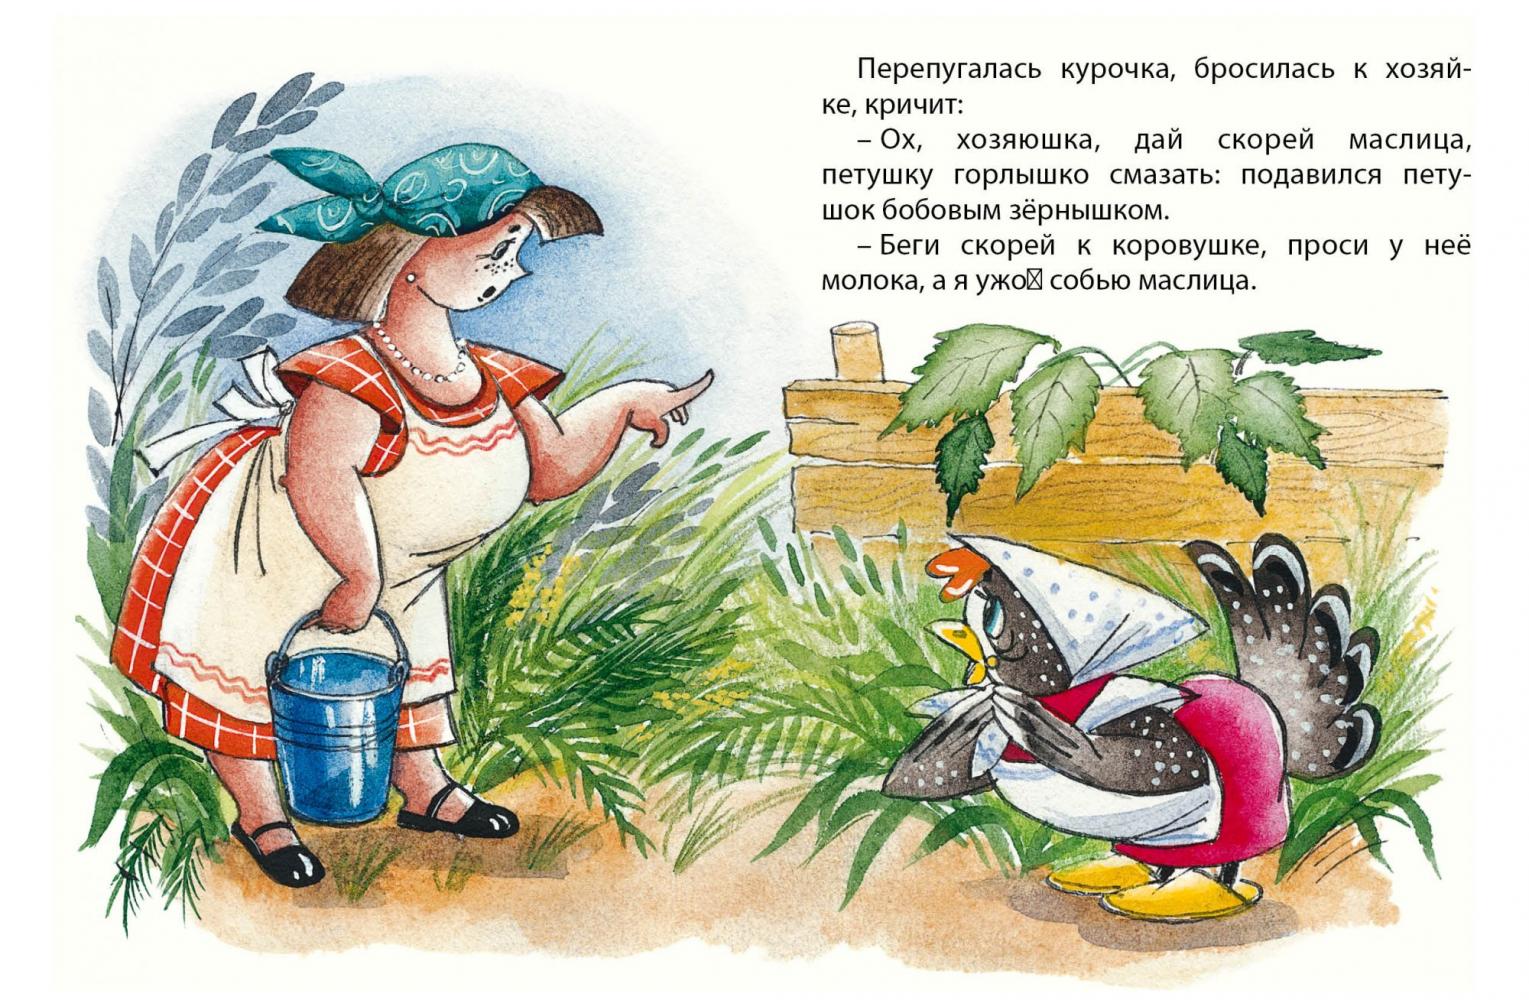 Подавился петушок бобовым зернышком: Читать сказку Петушок и бобовое зернышко онлайн